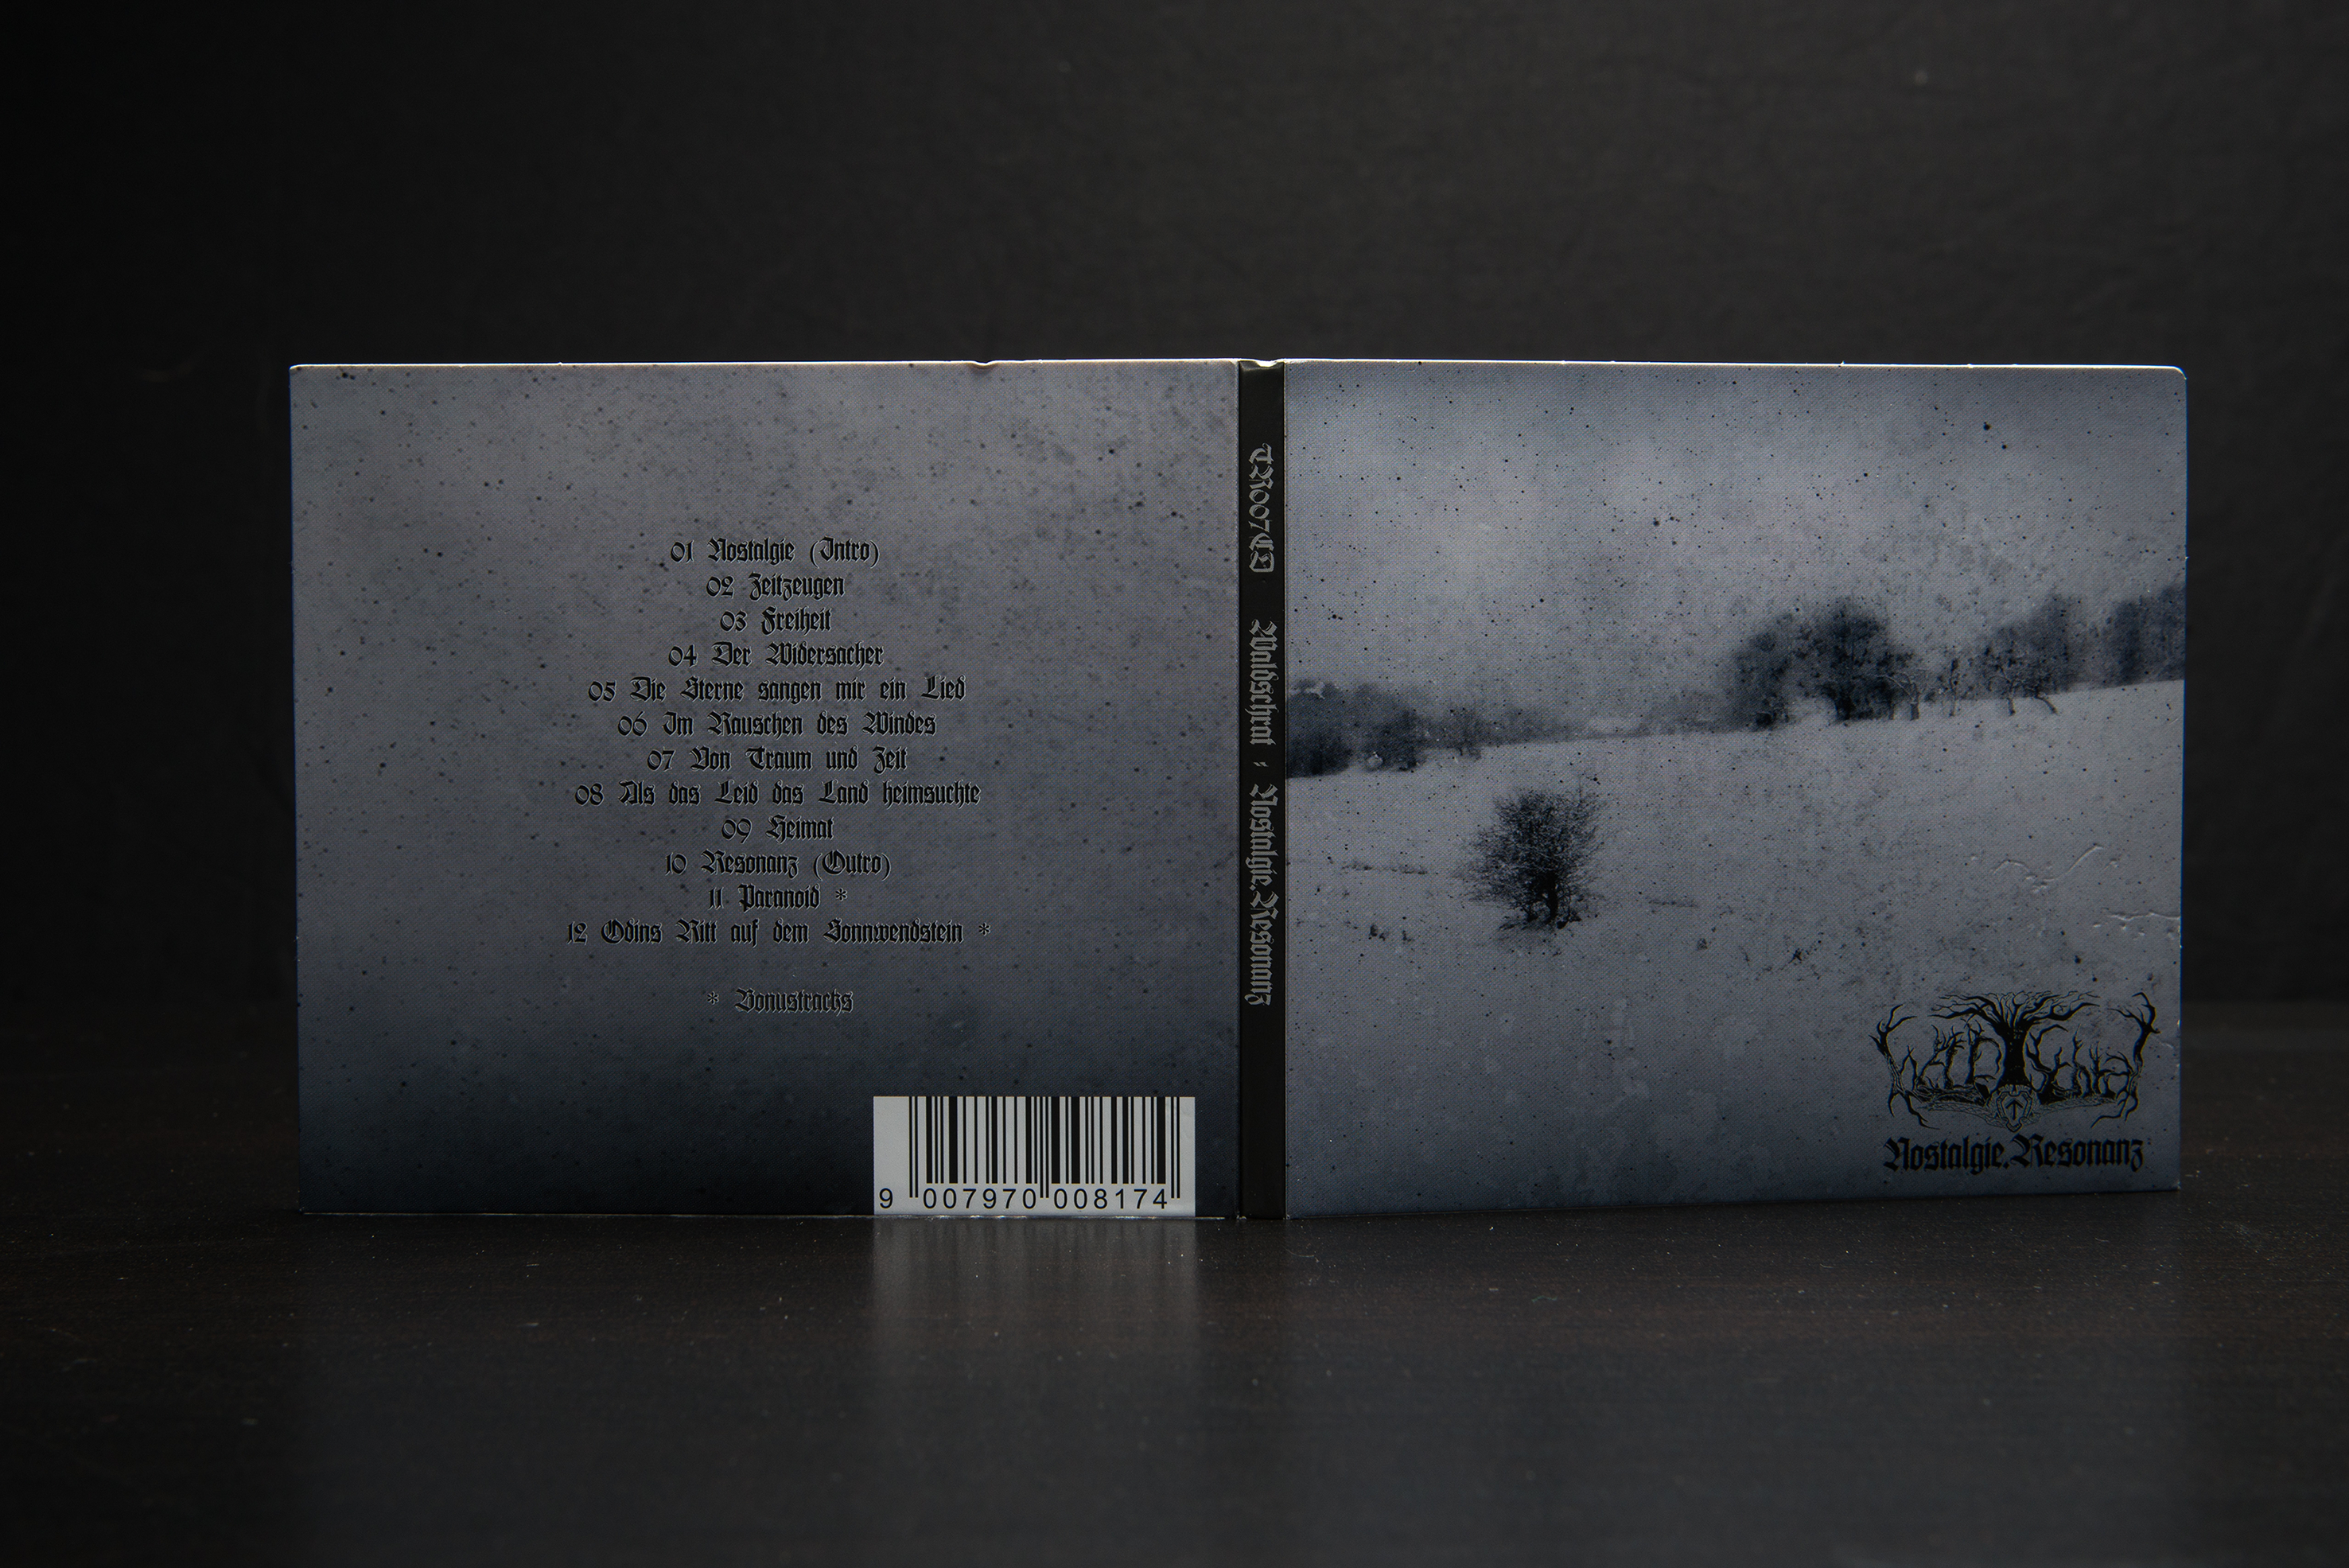 Waldschrat - Nostalgie.Resonanz CD Digipack